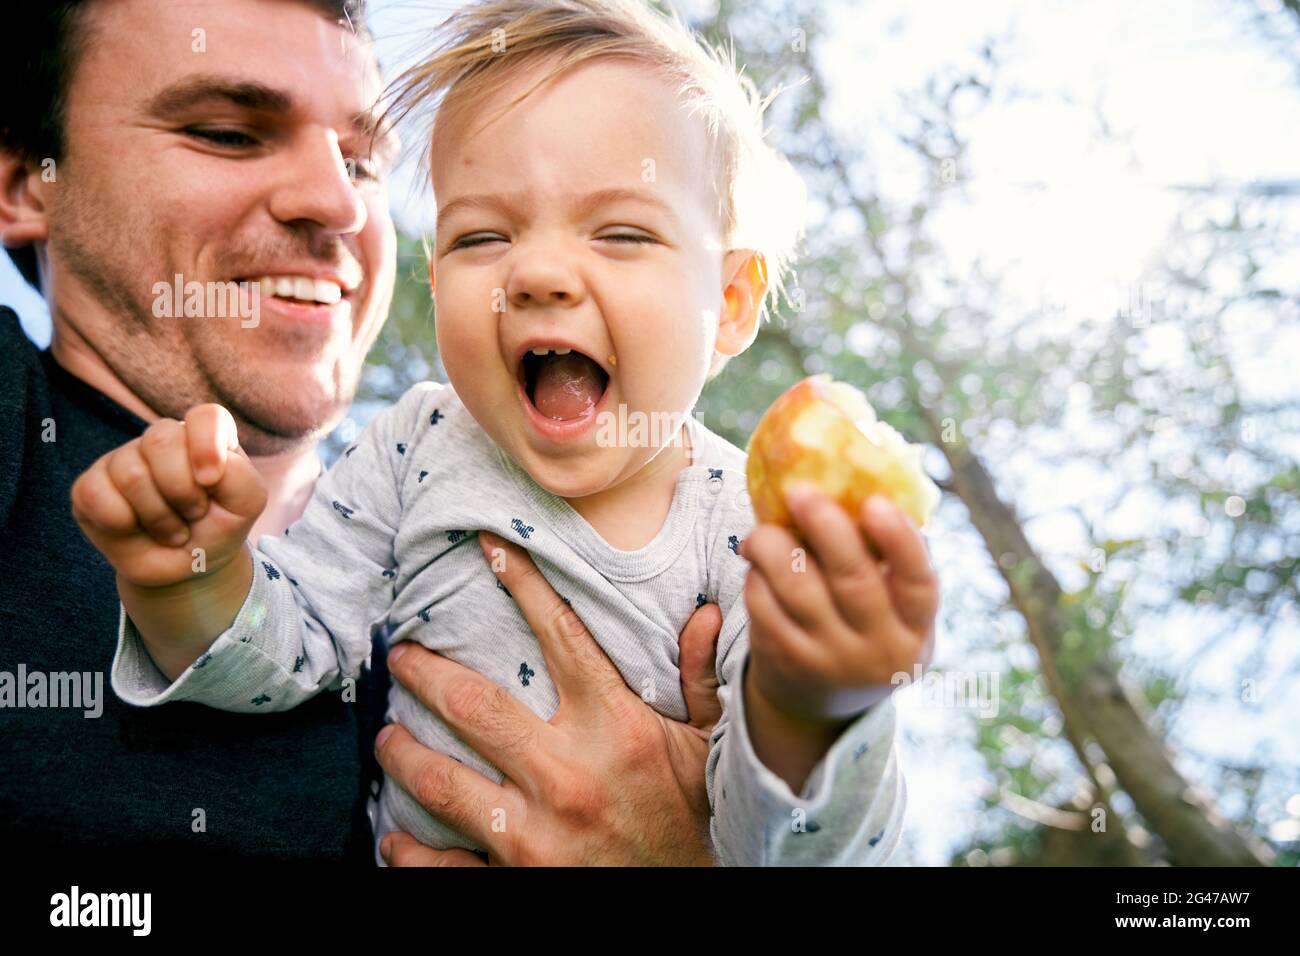 Un père souriant tient devant lui un enfant en train de rire avec une poire dans sa main contre un fond de bois. Gros plan. Angle bas Banque D'Images